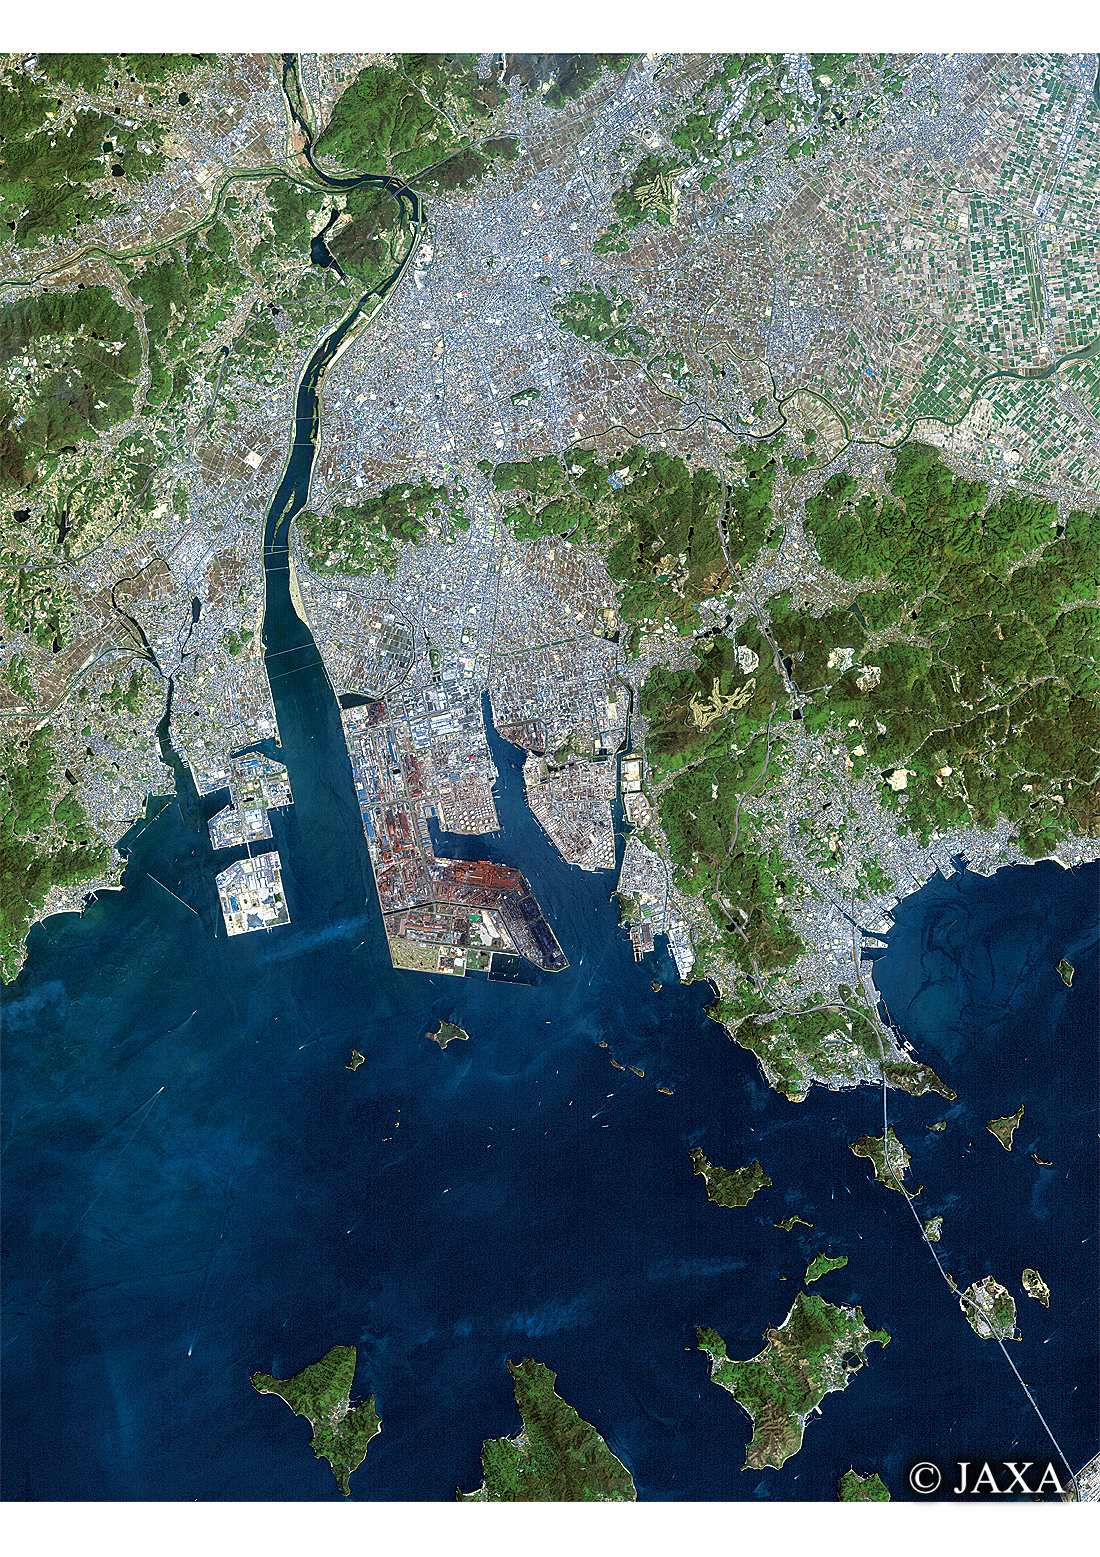 だいちから見た日本の都市 倉敷市周辺:衛星画像